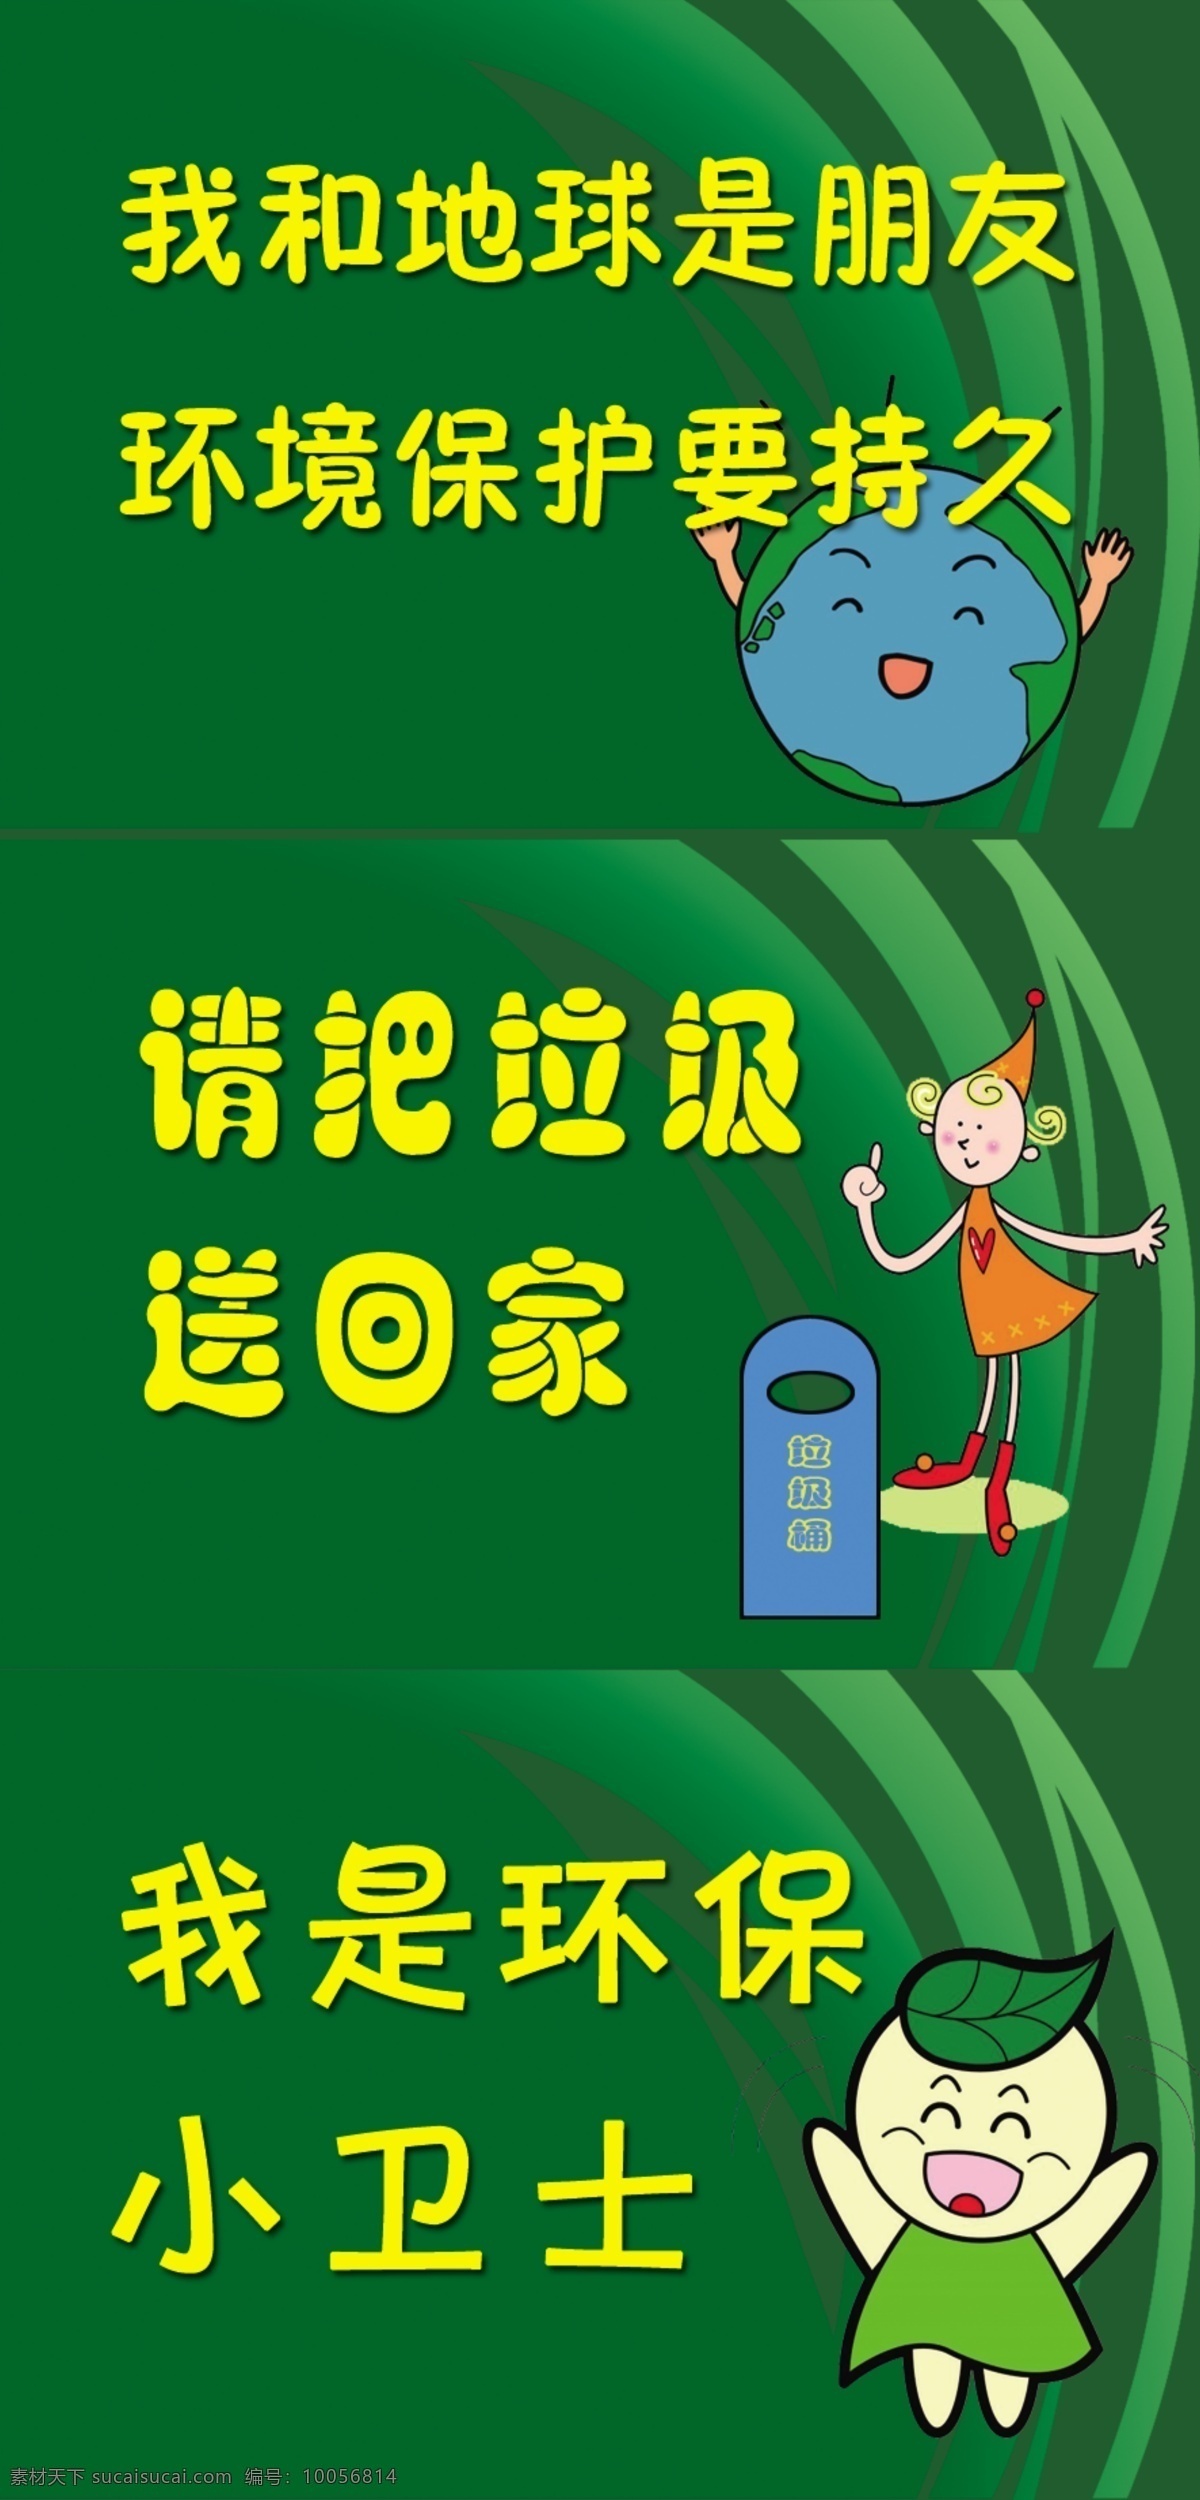 幼儿园牌子 幼儿园 提示牌 爱护环境 卡通 地球 绿色 小孩 可爱 分层 源文件